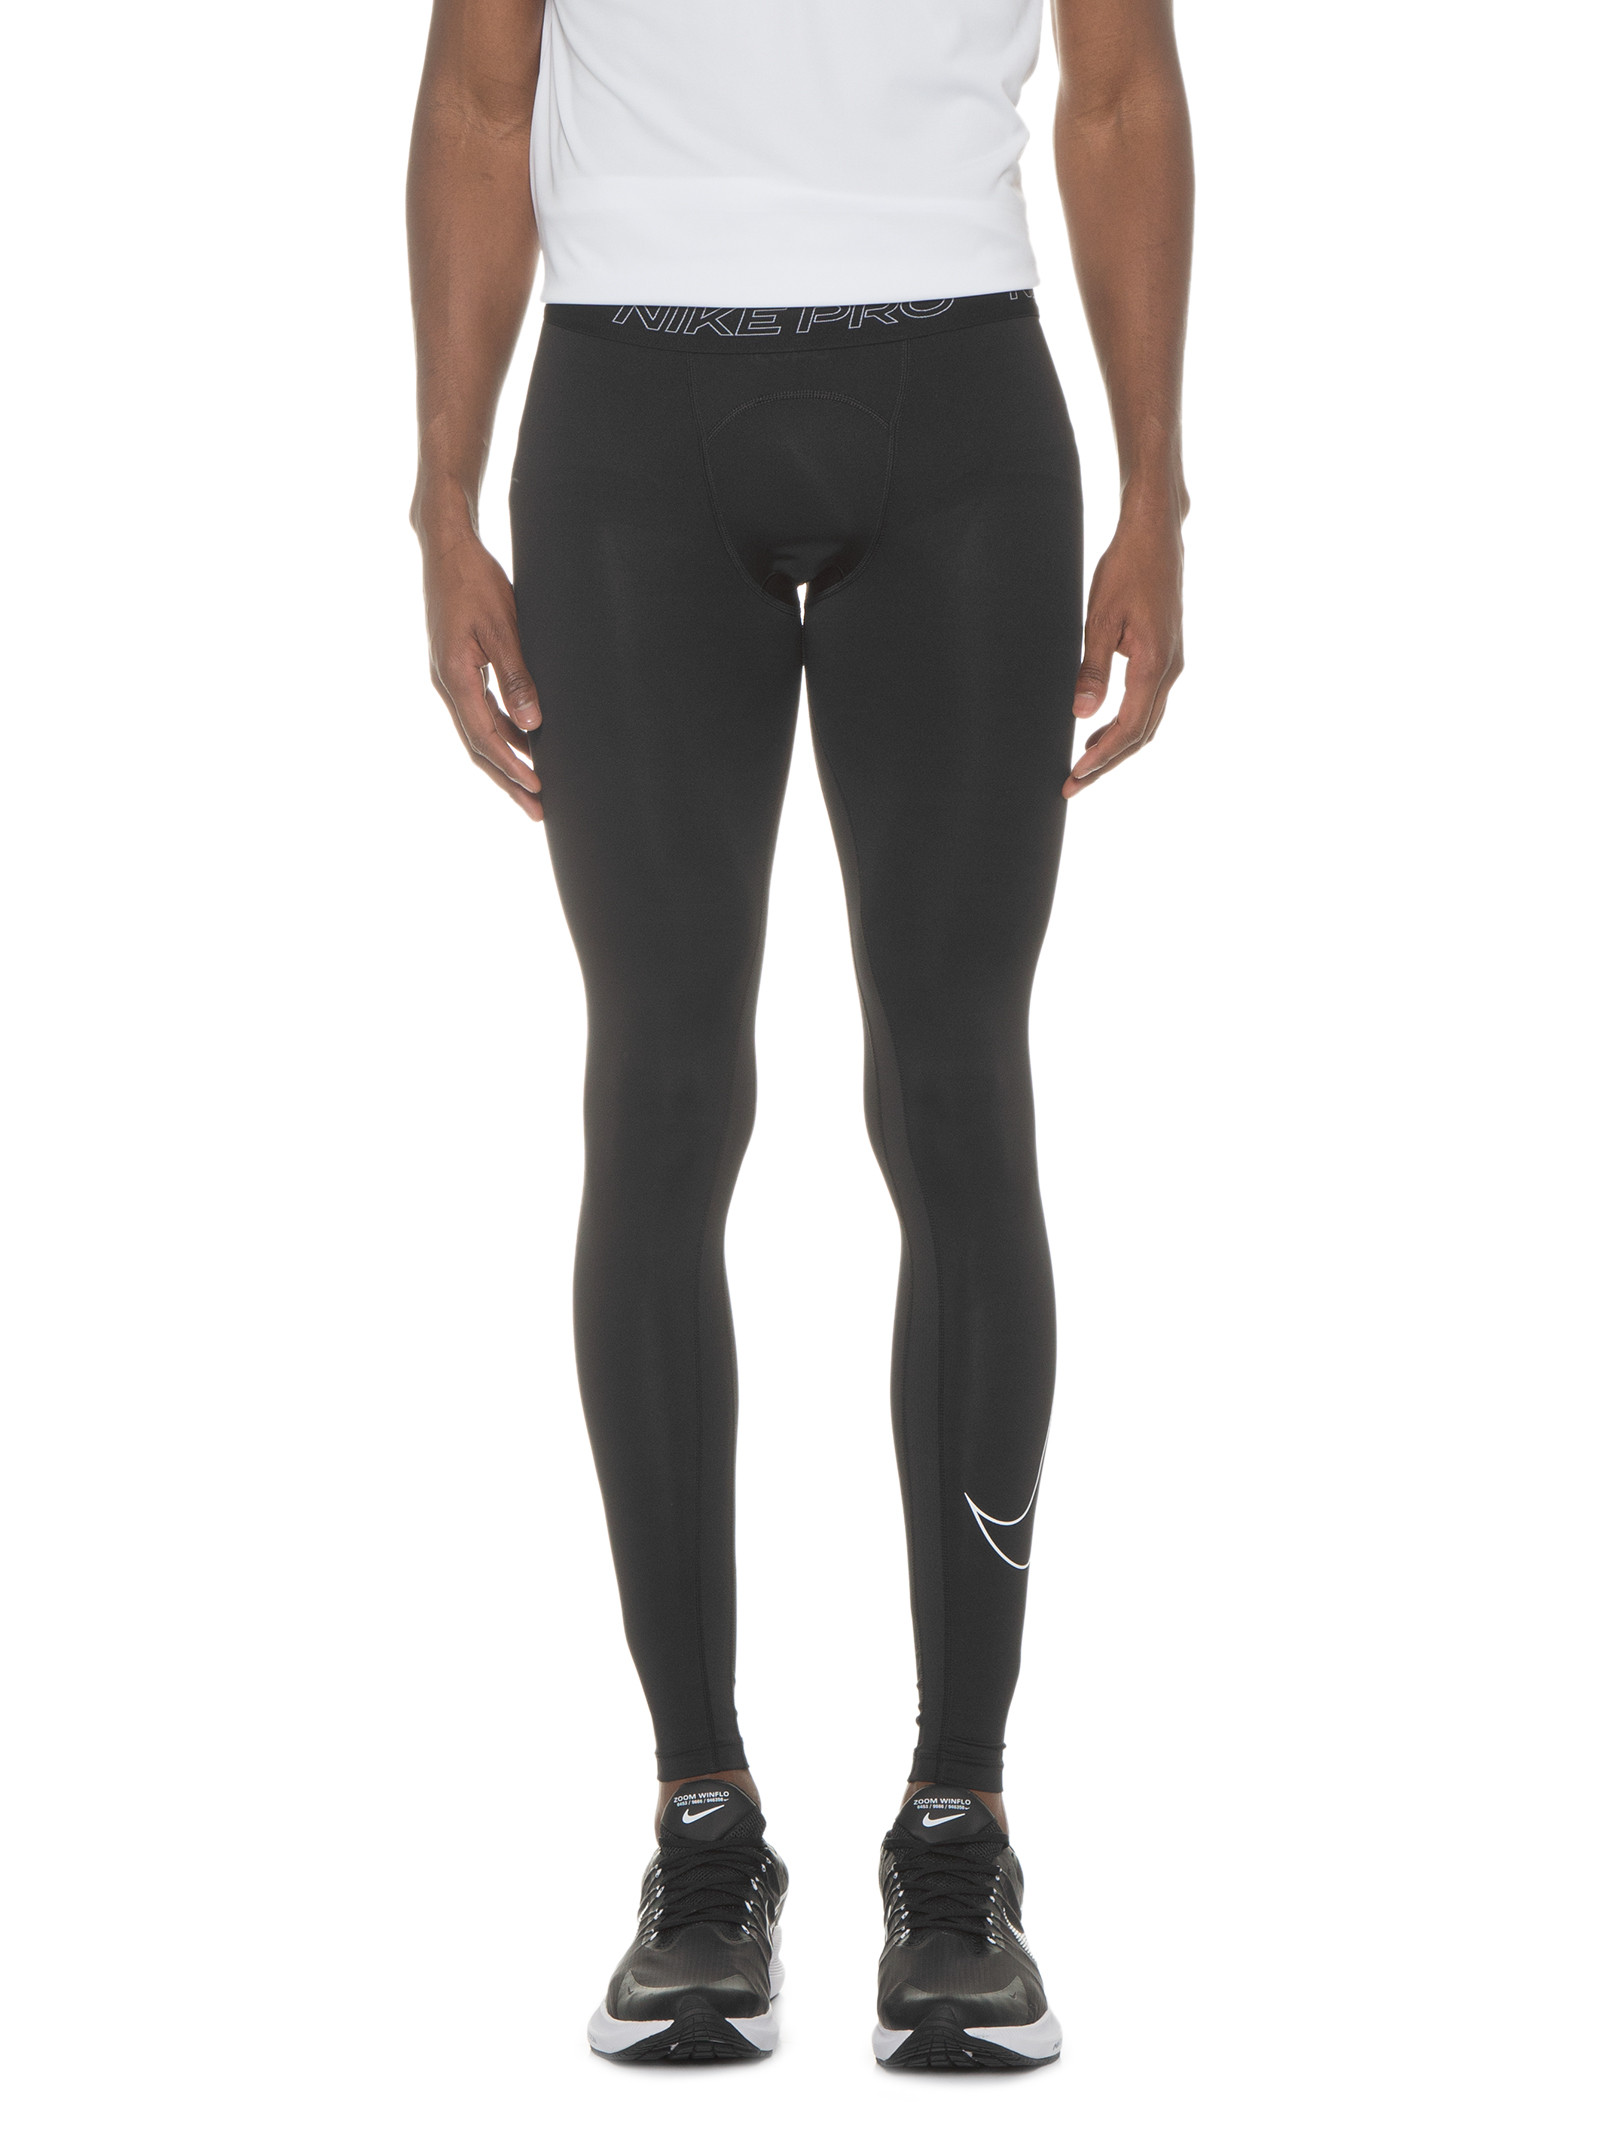 Calça Masculina Legging Pro Dri-FIT - Nike - Preto - Oqvestir